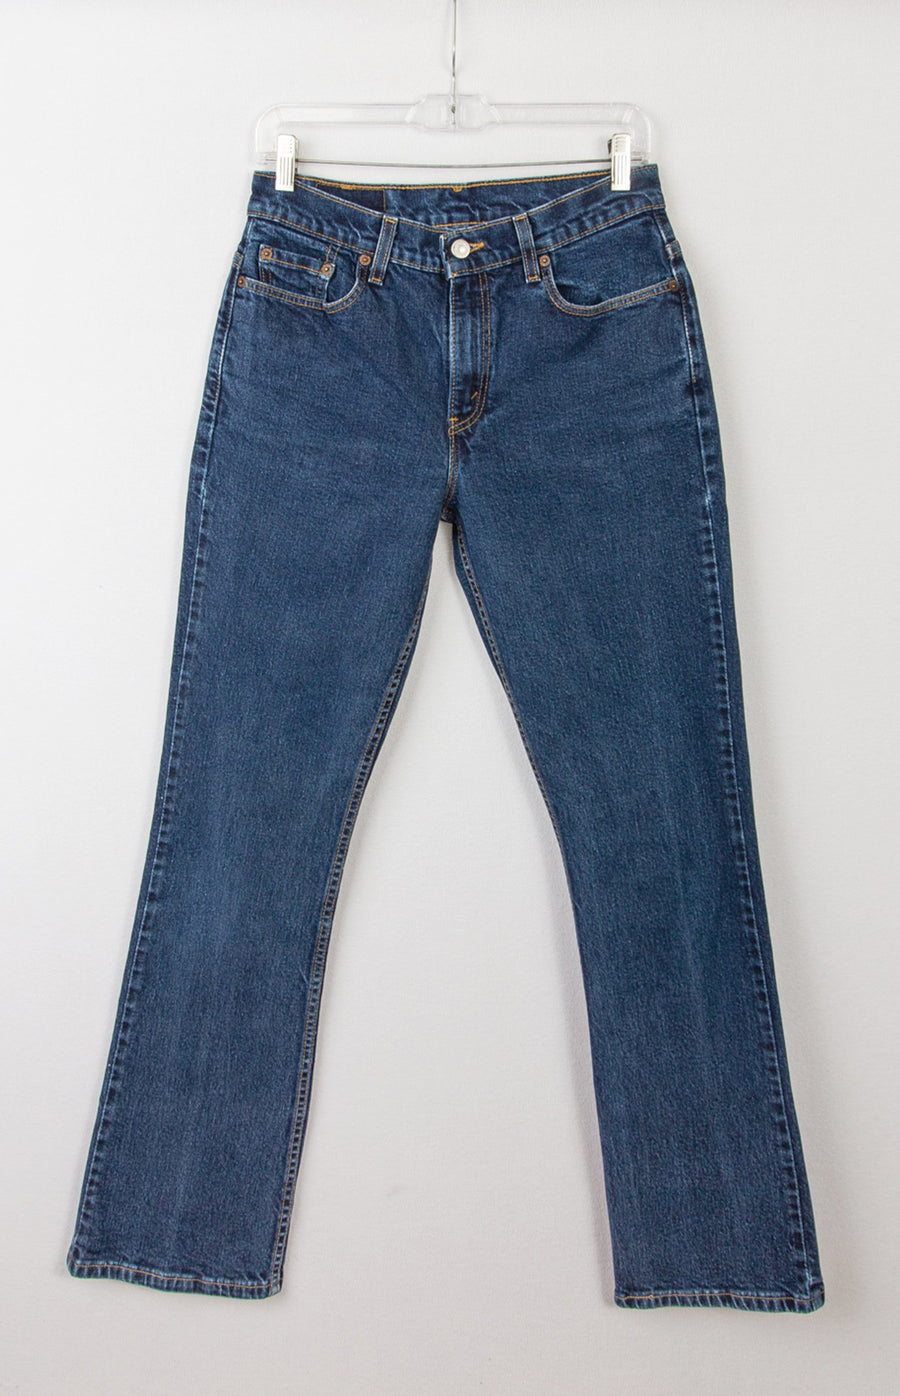 Levi's 515 Jeans | Vintage Levis Jeans | GOAT Vintage